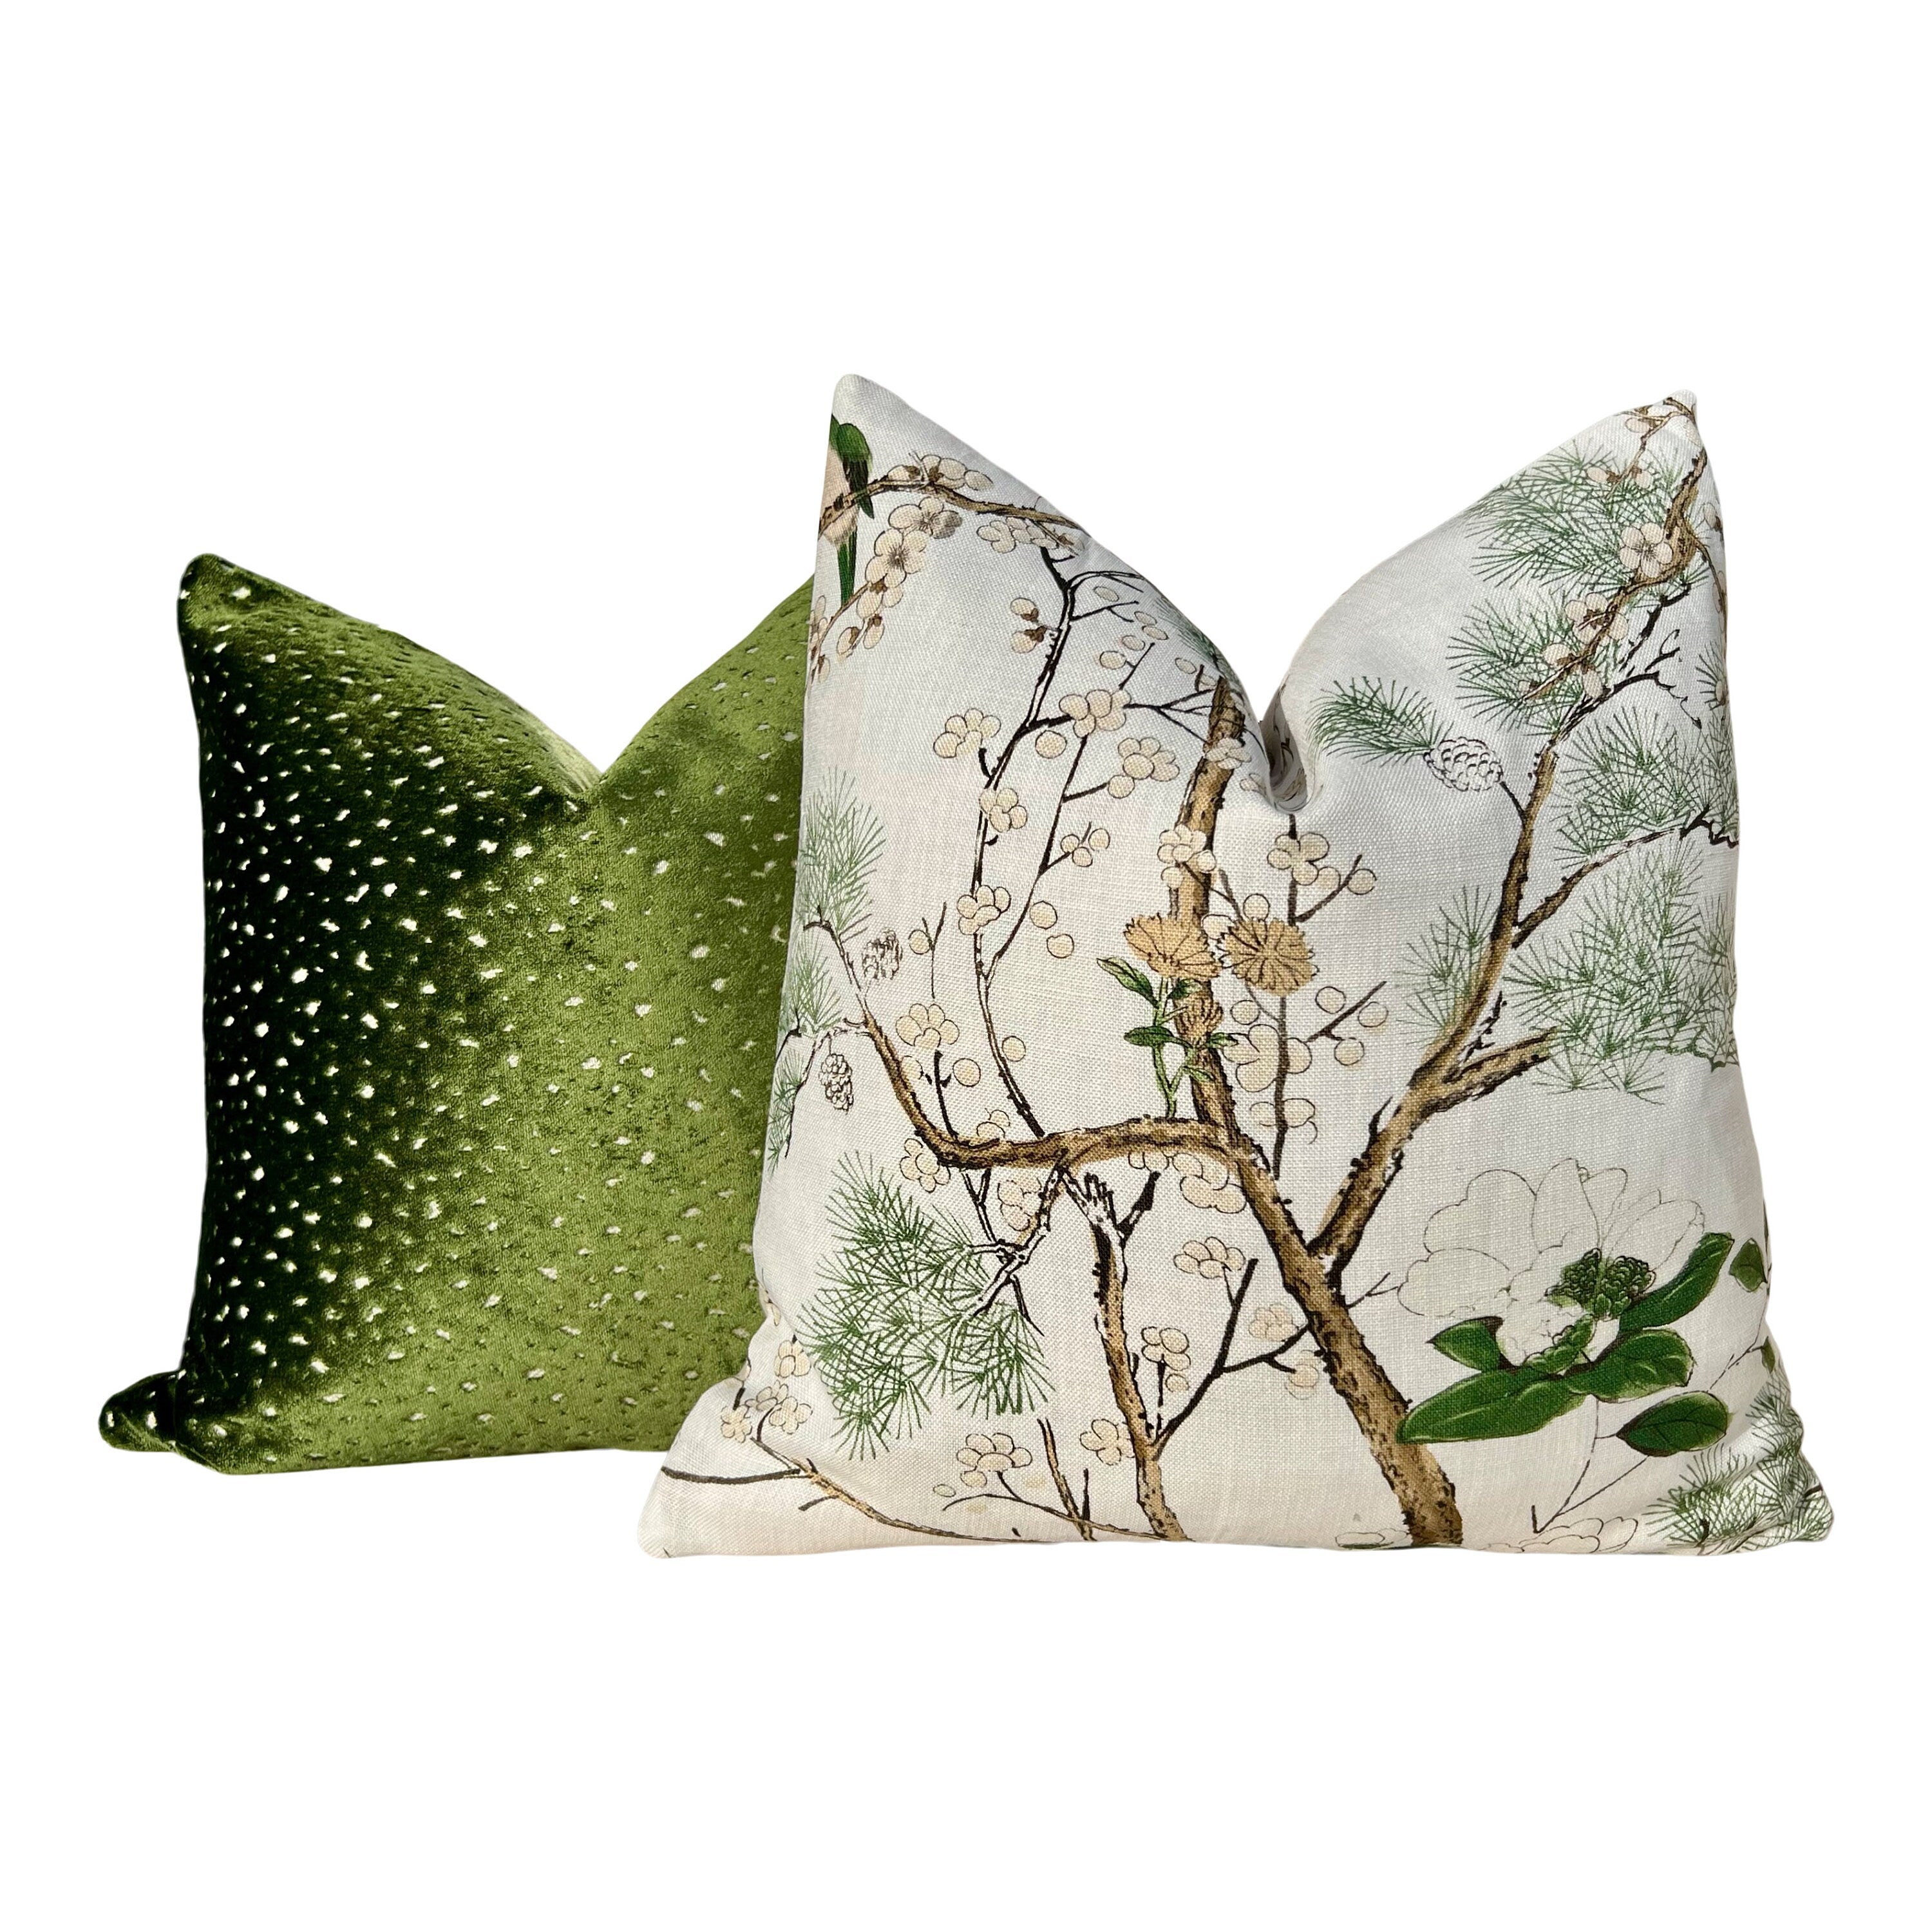 Designer Green Spotted Velvet Pillow. Accent Lumbar Animal Skin Pillow Designer Velvet Long Lumbar Pillow Decorative, Toss Throw Pillow